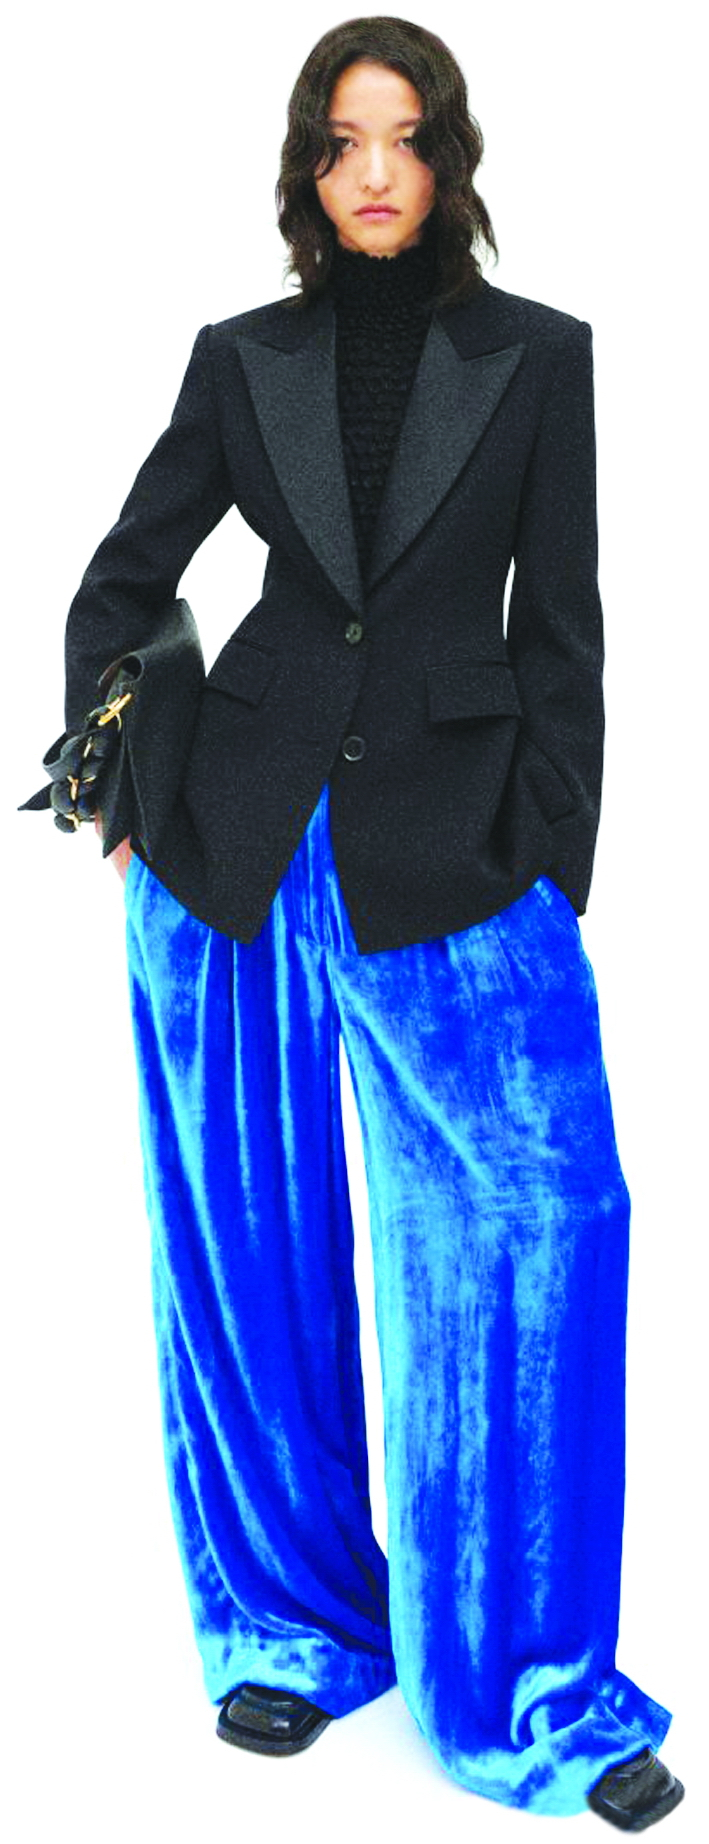 Sắc xanh cobalt đặc biệt  hợp với chất liệu nhung. Trong ảnh  là một mẫu quần từ nhà mốt Proenza Schouler